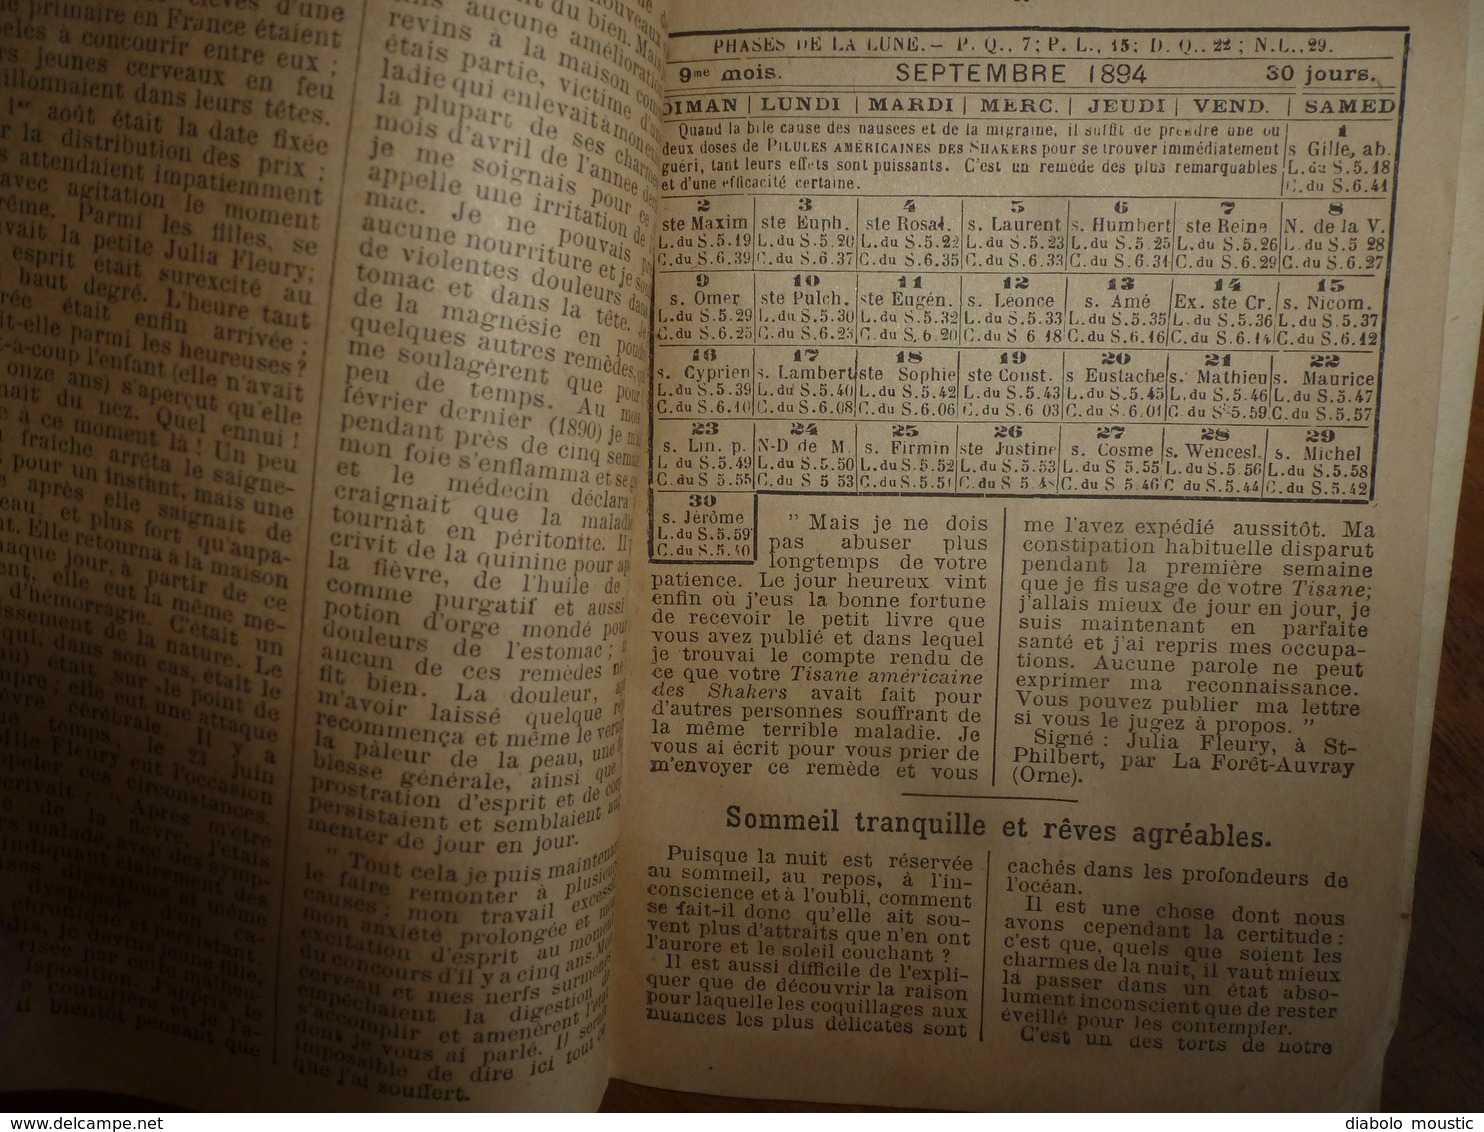 1893 : SHAKERS - Revue : Publication paraissant à LILLE ( Pilules,Tisanes,etc ) à la Pharmacie FANYAU de LILLE